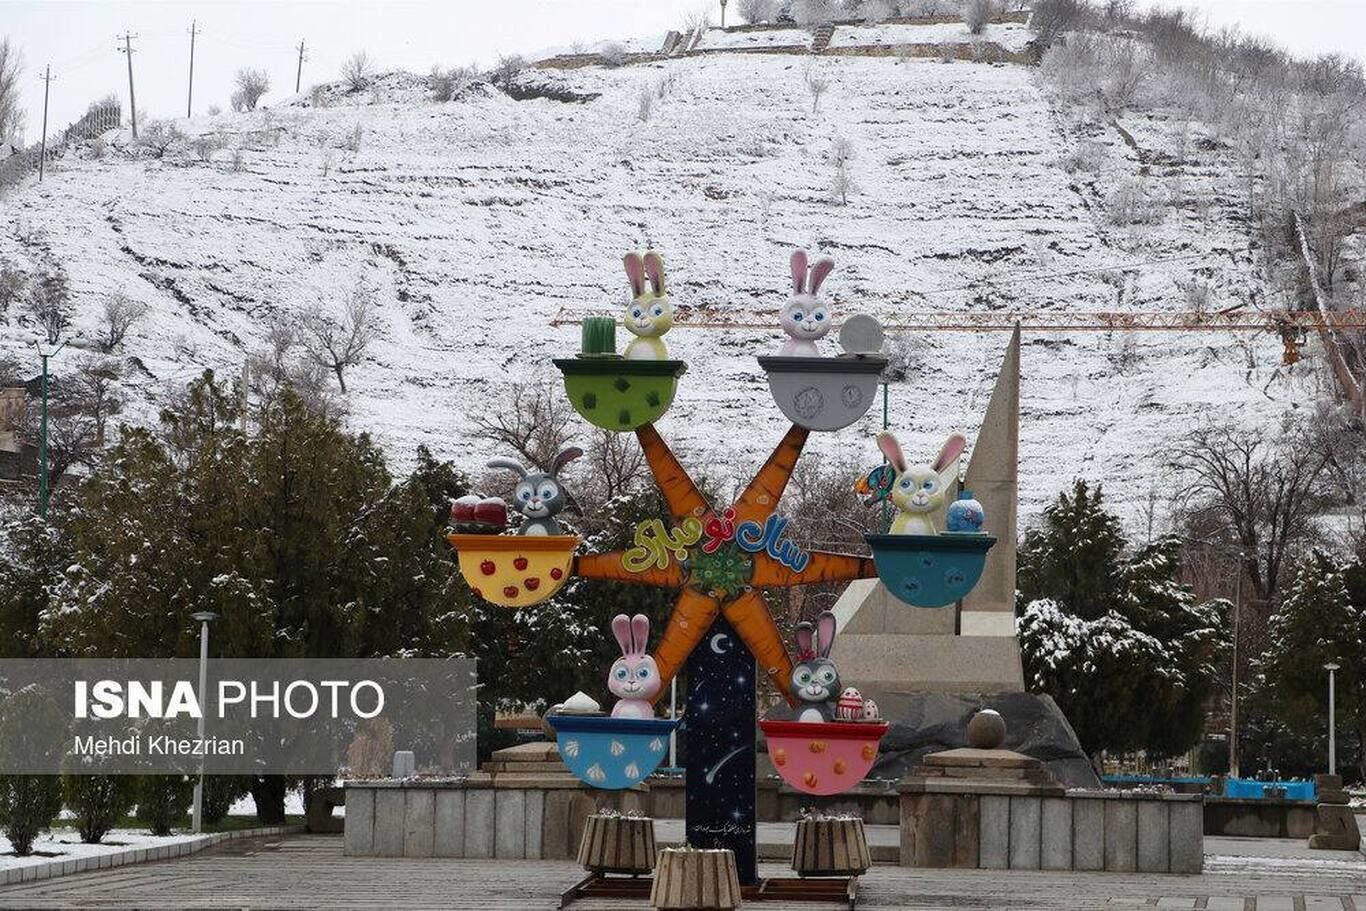 برف سنگینِ نوروزی بر تن پایتختِ تمدن ایران